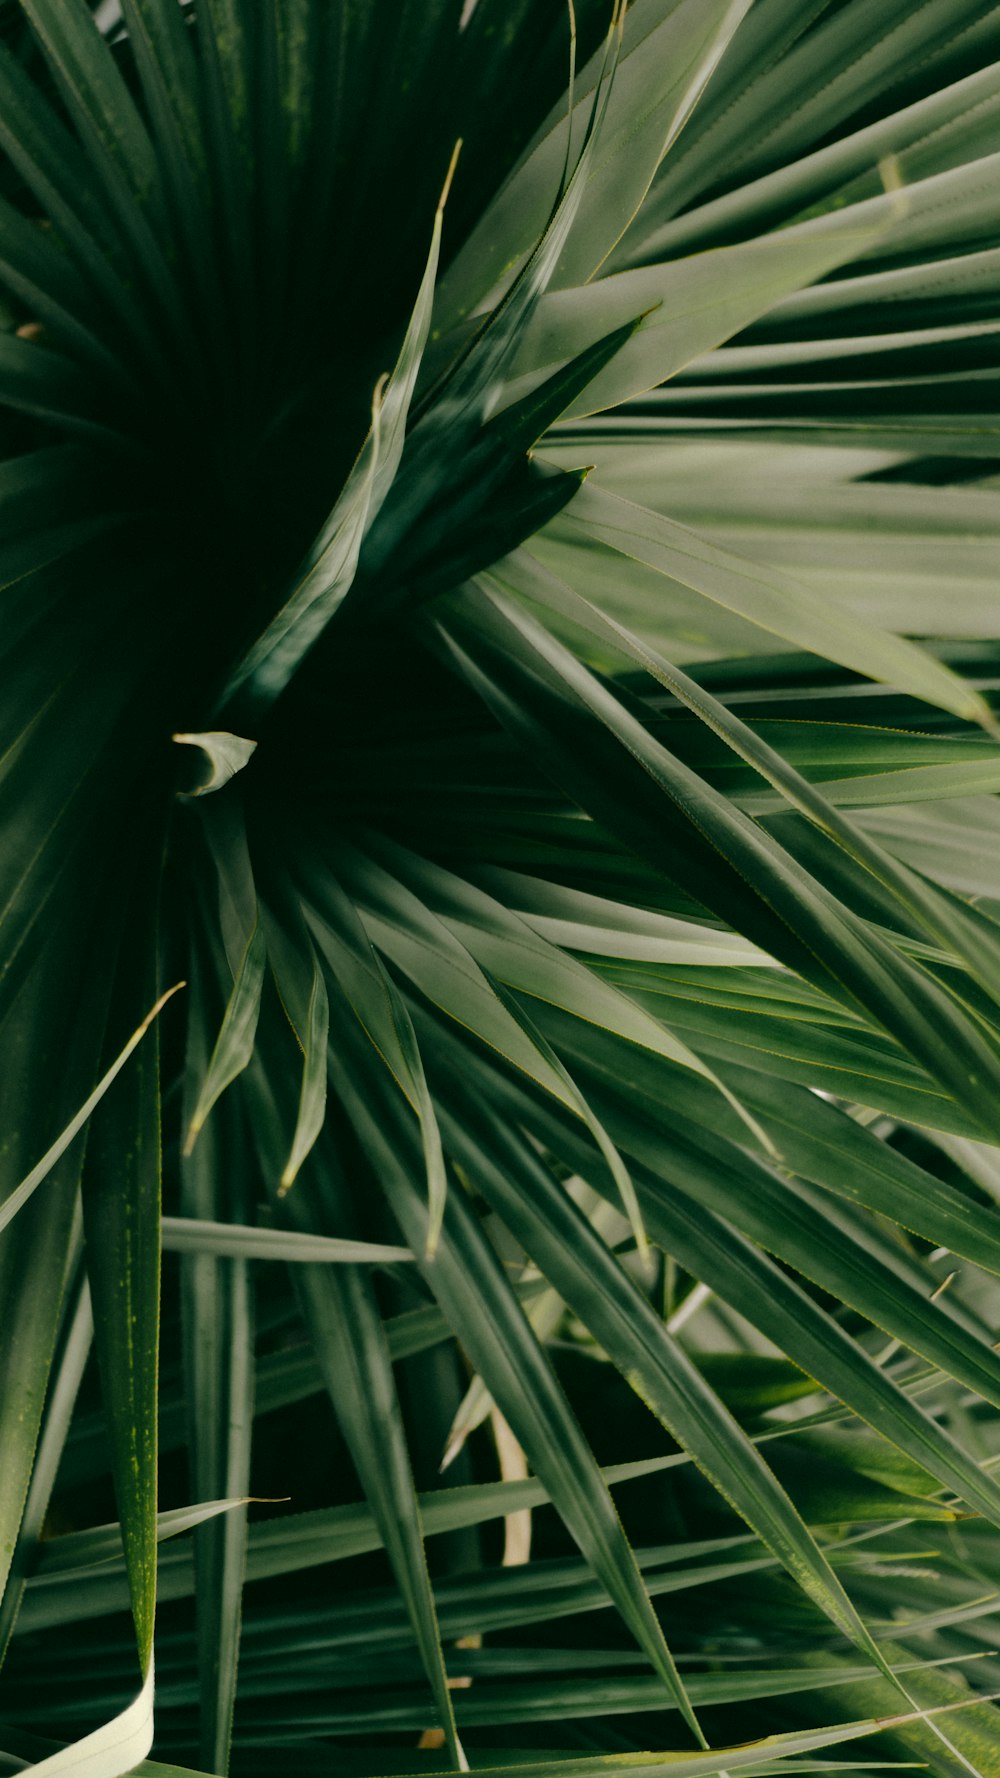 Fotografía de primer plano de la planta de palma verde